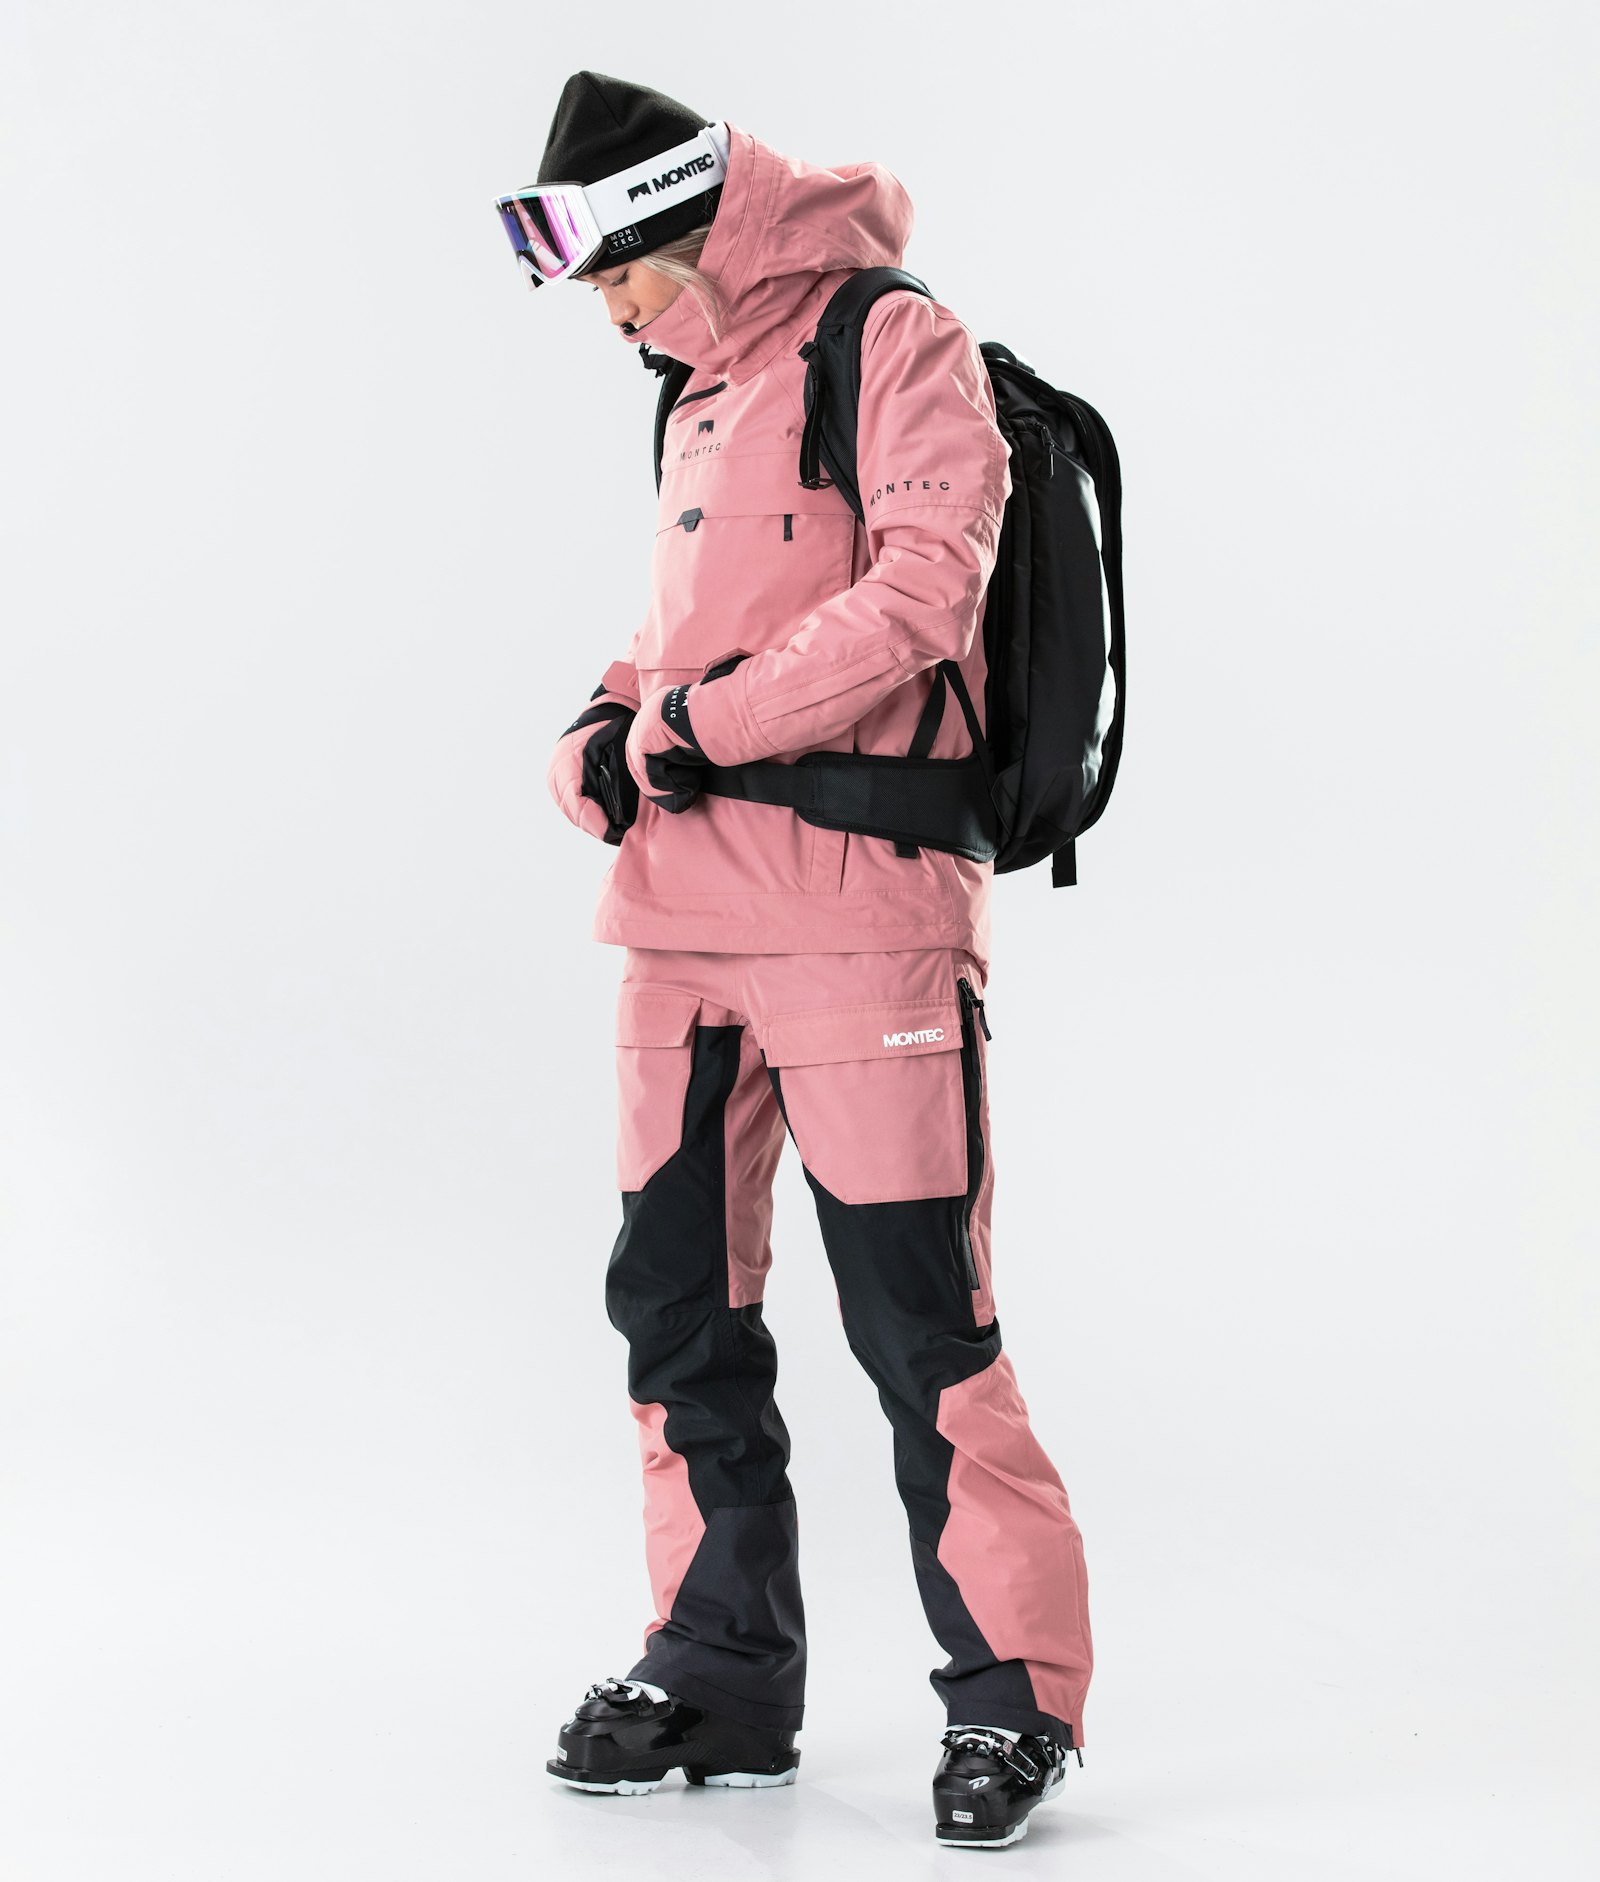 Dune W 2020 Ski jas Dames Pink